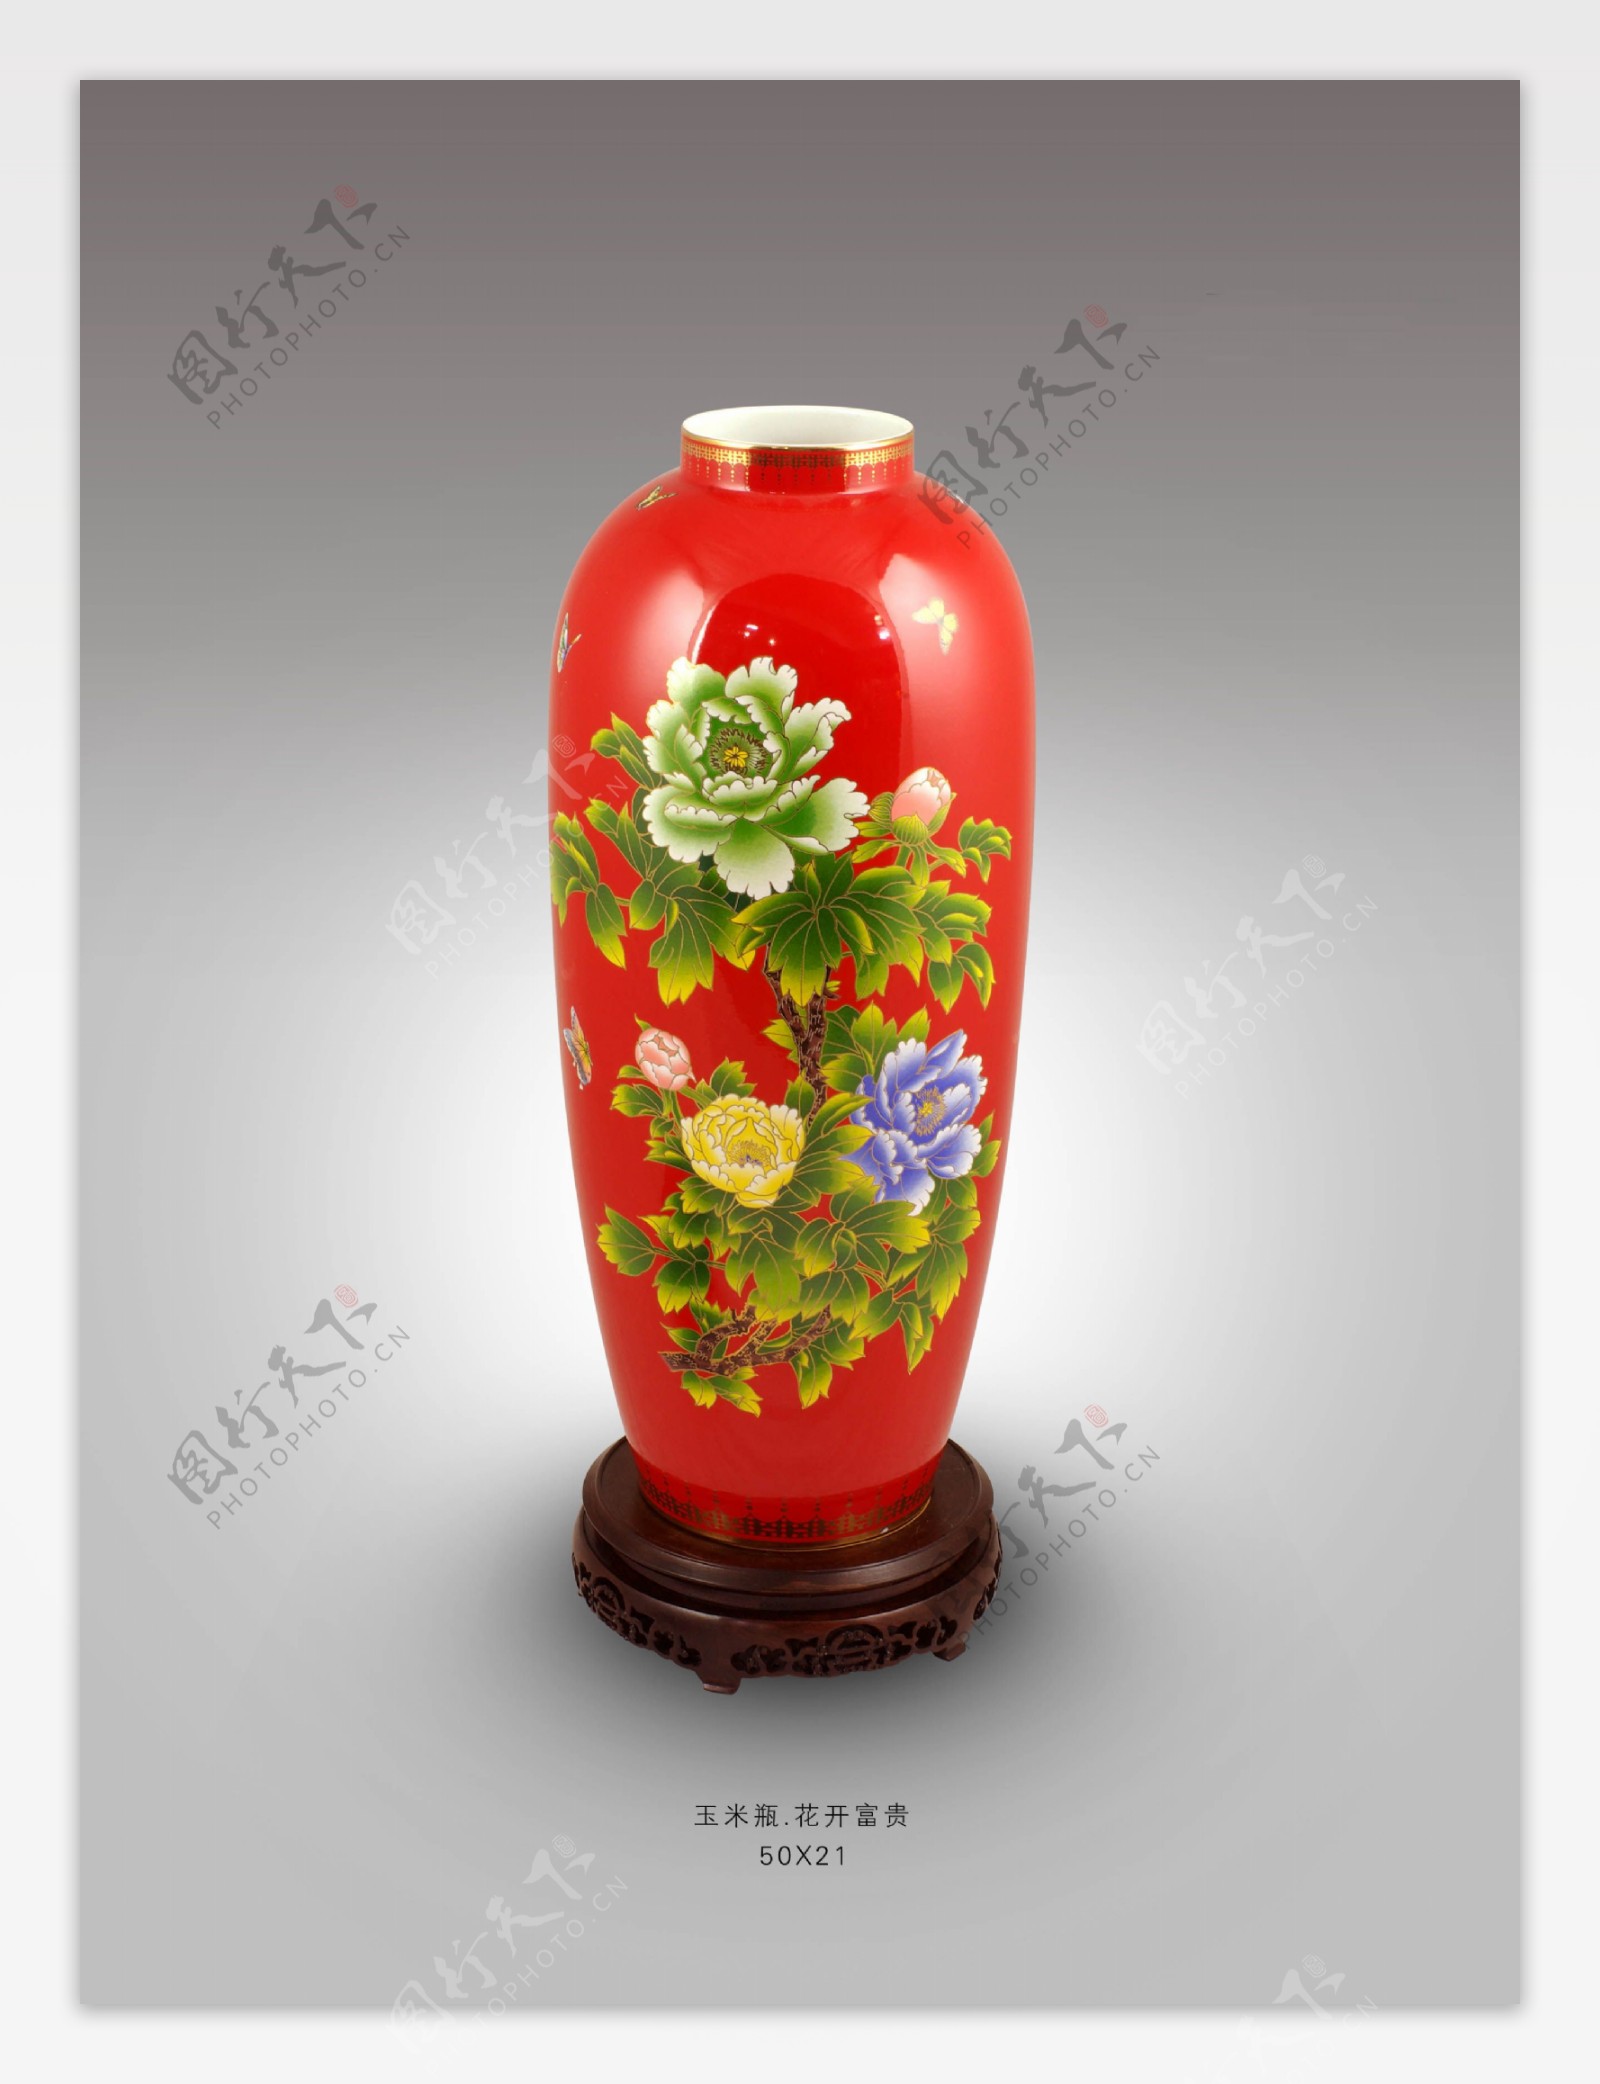 红瓷花瓶系列玉米瓶图片